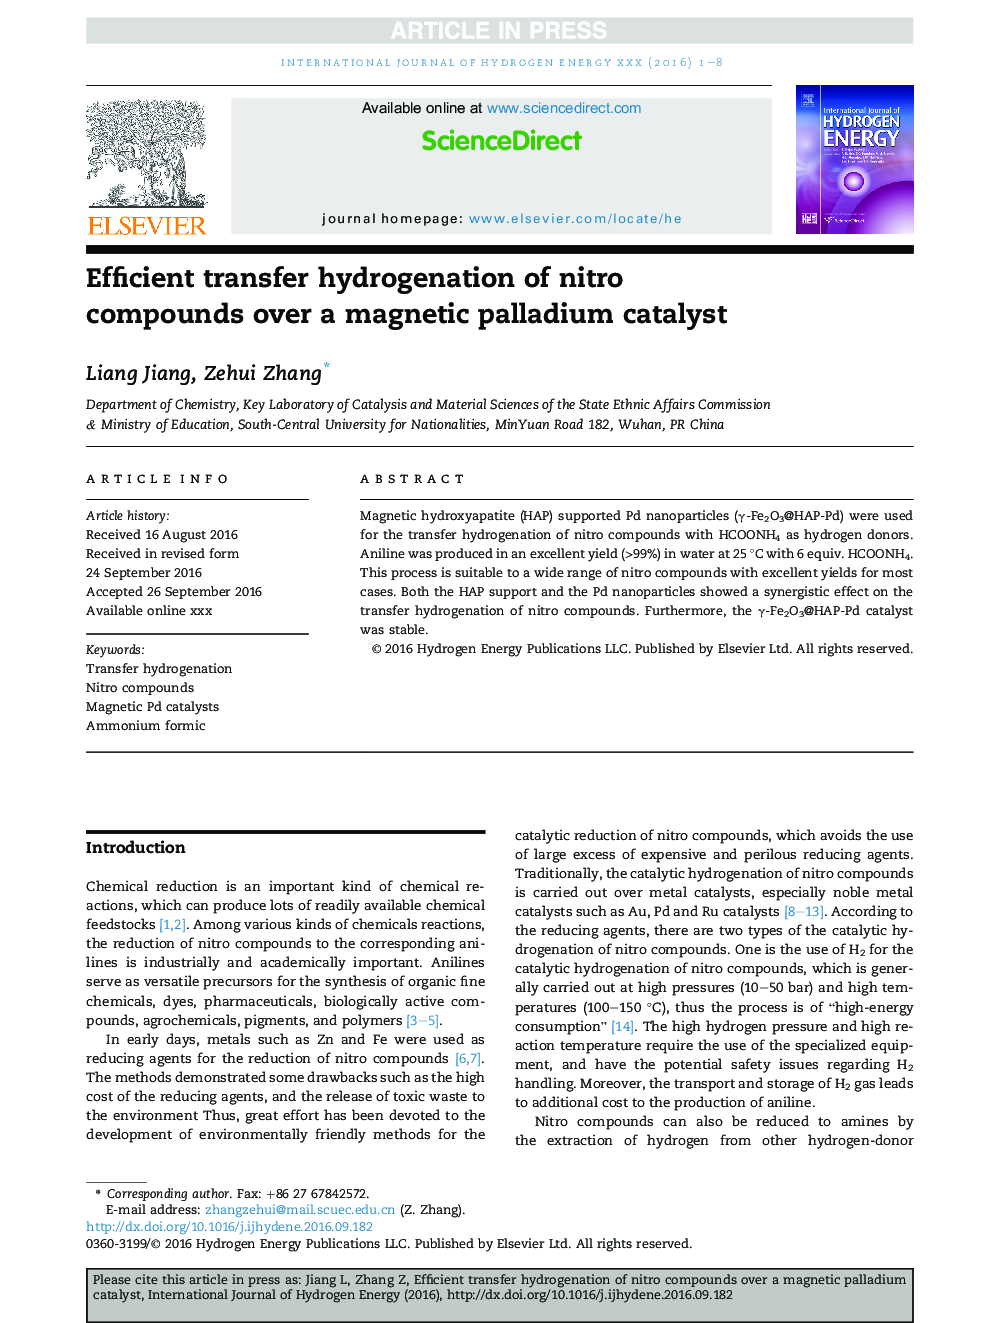 انتقال هیدروژناسیون کارآمد ترکیبات نیترو بر یک کاتالیزور پالادیوم مغناطیسی 